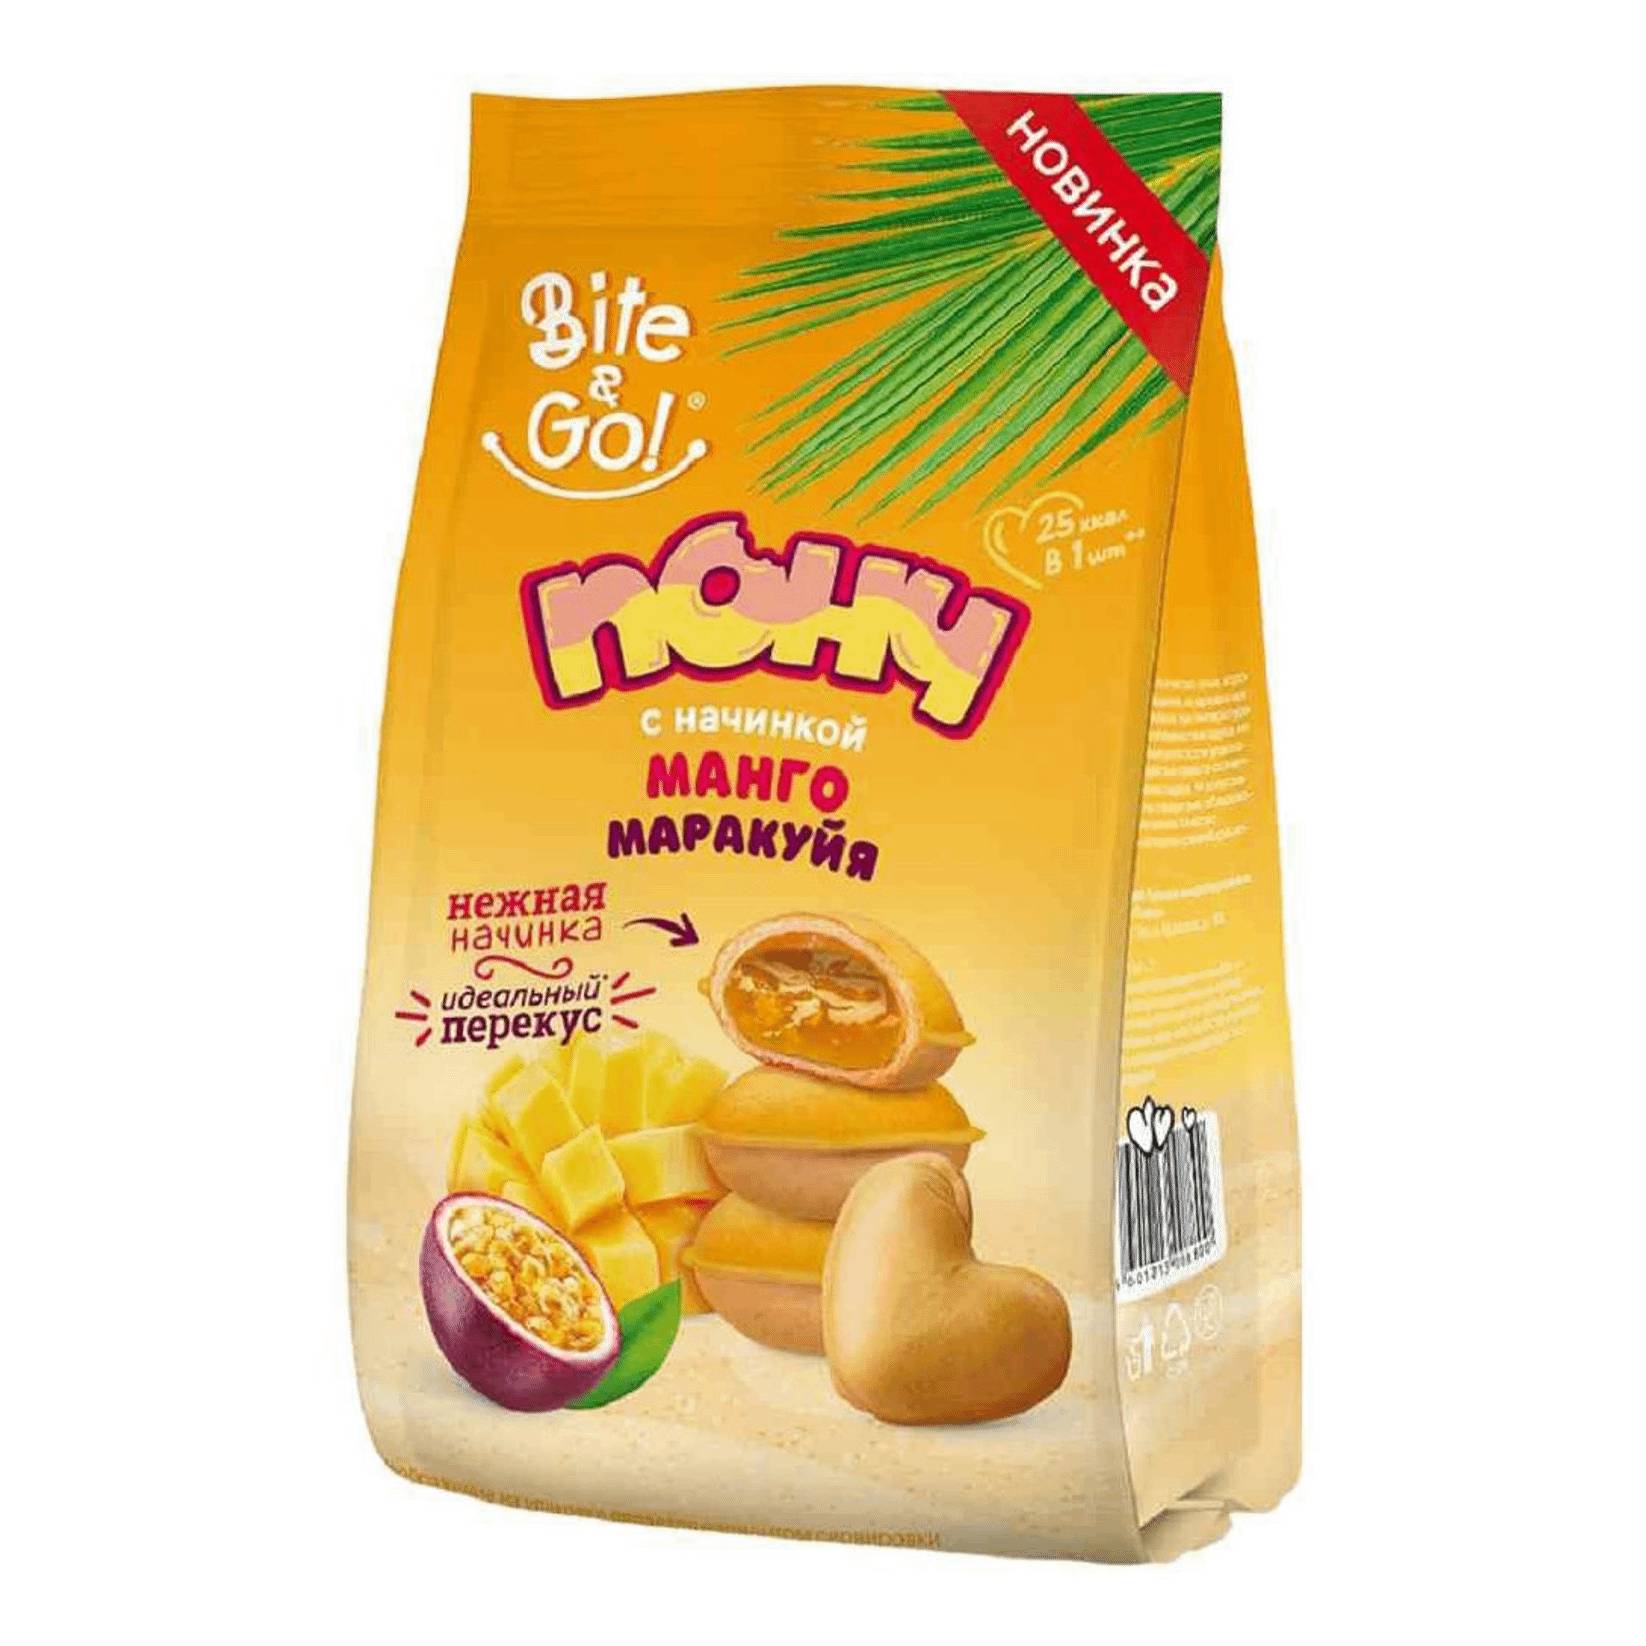 Печенье Рот Фронт манго-маракуйя понч, 150 г напиток добрый манго маракуйя 1 литр газ пэт 12 шт в уп